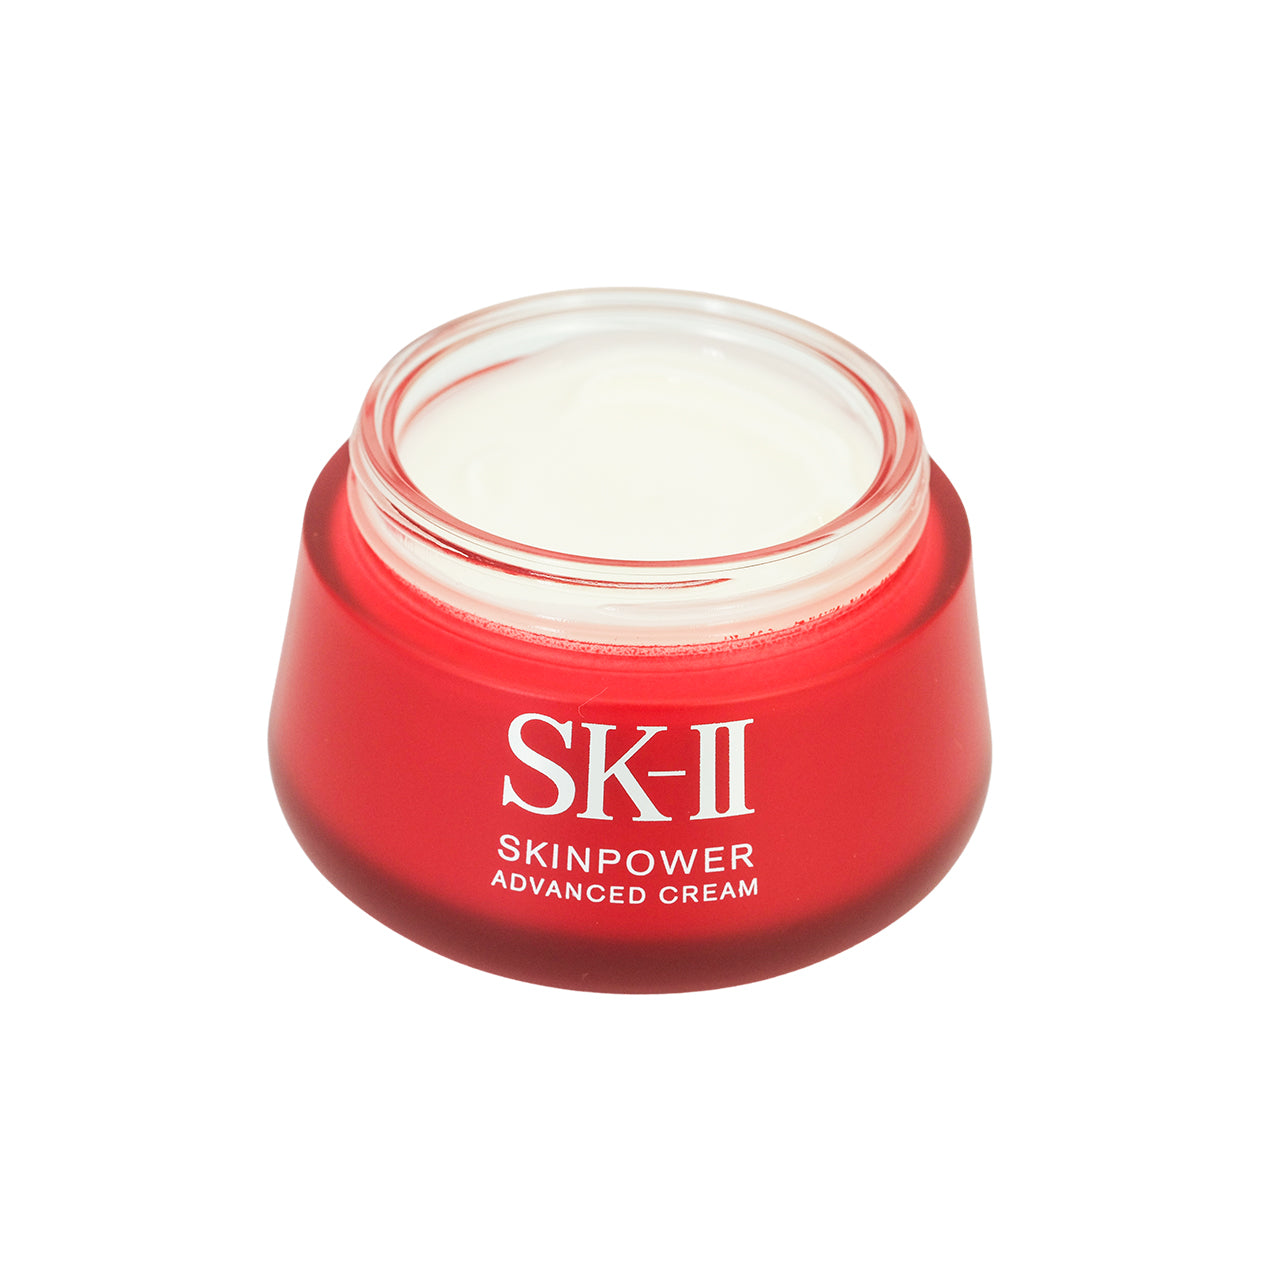 SK-II Skinpower Advanced Cream 100g | Sasa Global eShop